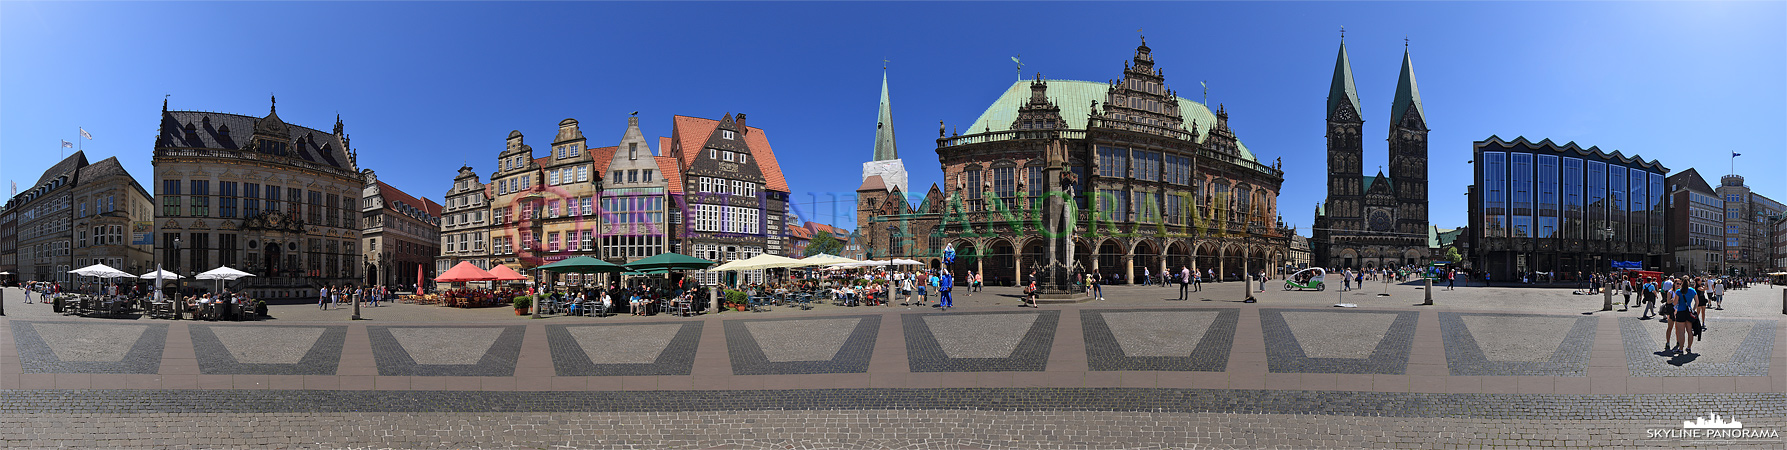 Marktplatz von Bremen (p_00811)